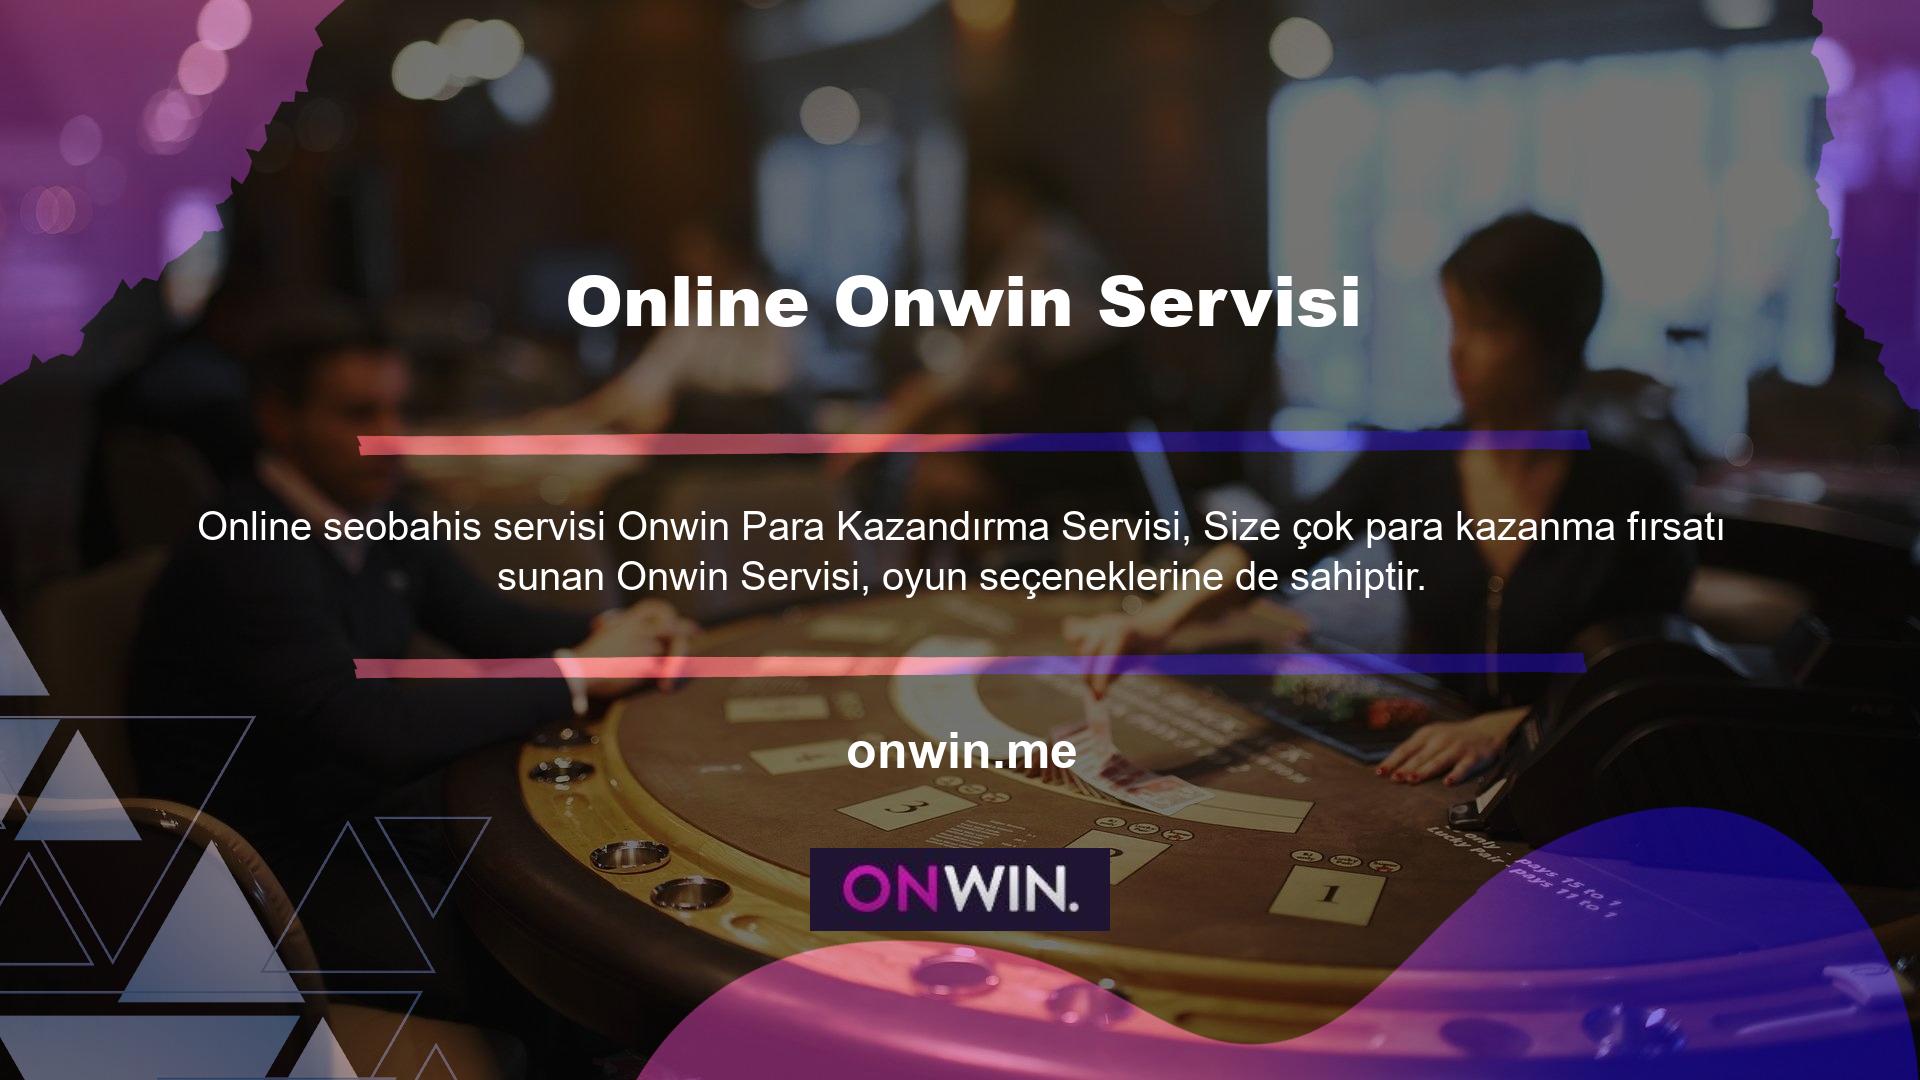 Onwin oyun konseptinin slot, canlı casino oyunları, poker oyunları, canlı oyun seçenekleri ve bingo oyun seçeneklerini içerdiğini göreceksiniz